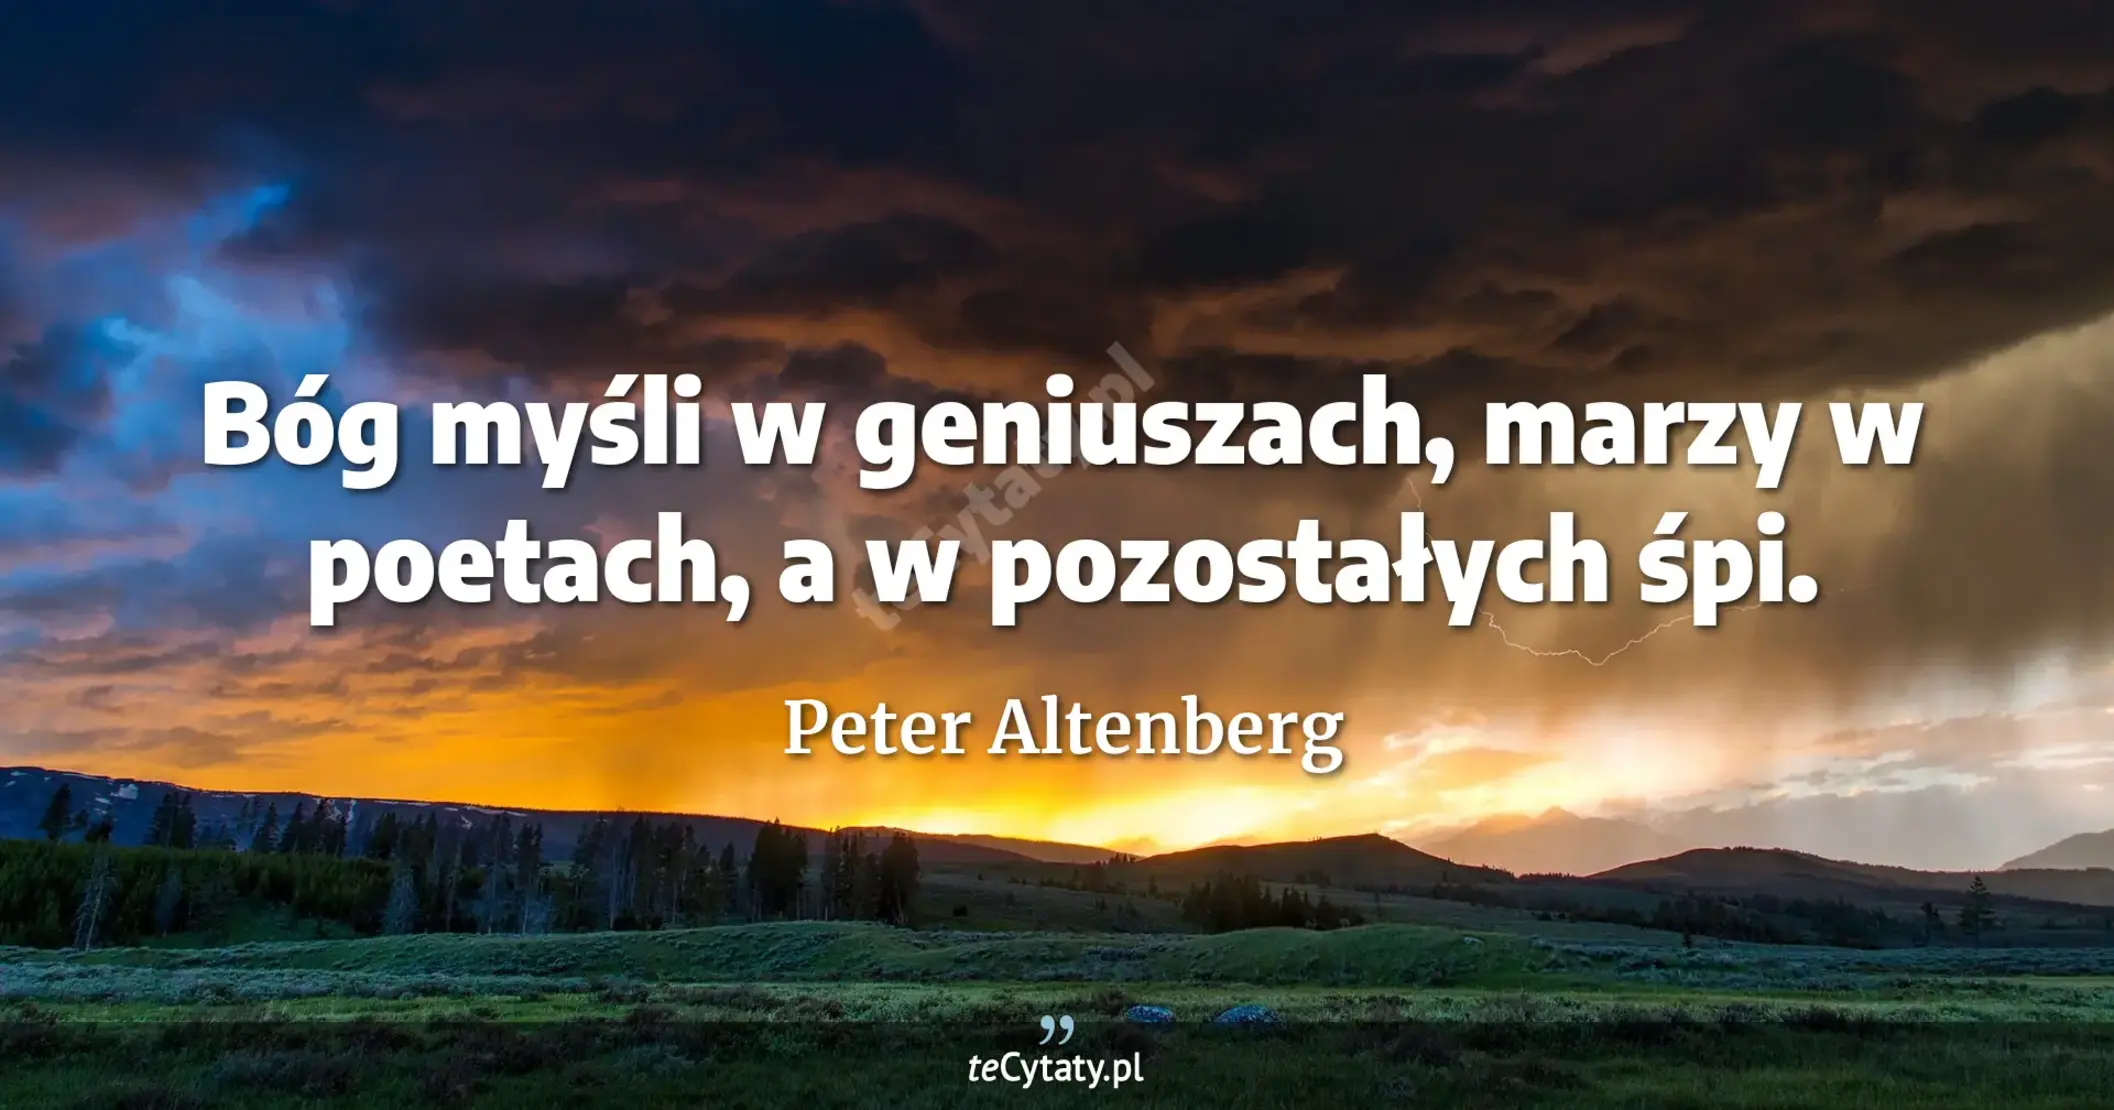 Bóg myśli w geniuszach, marzy w poetach, a w pozostałych śpi. - Peter Altenberg